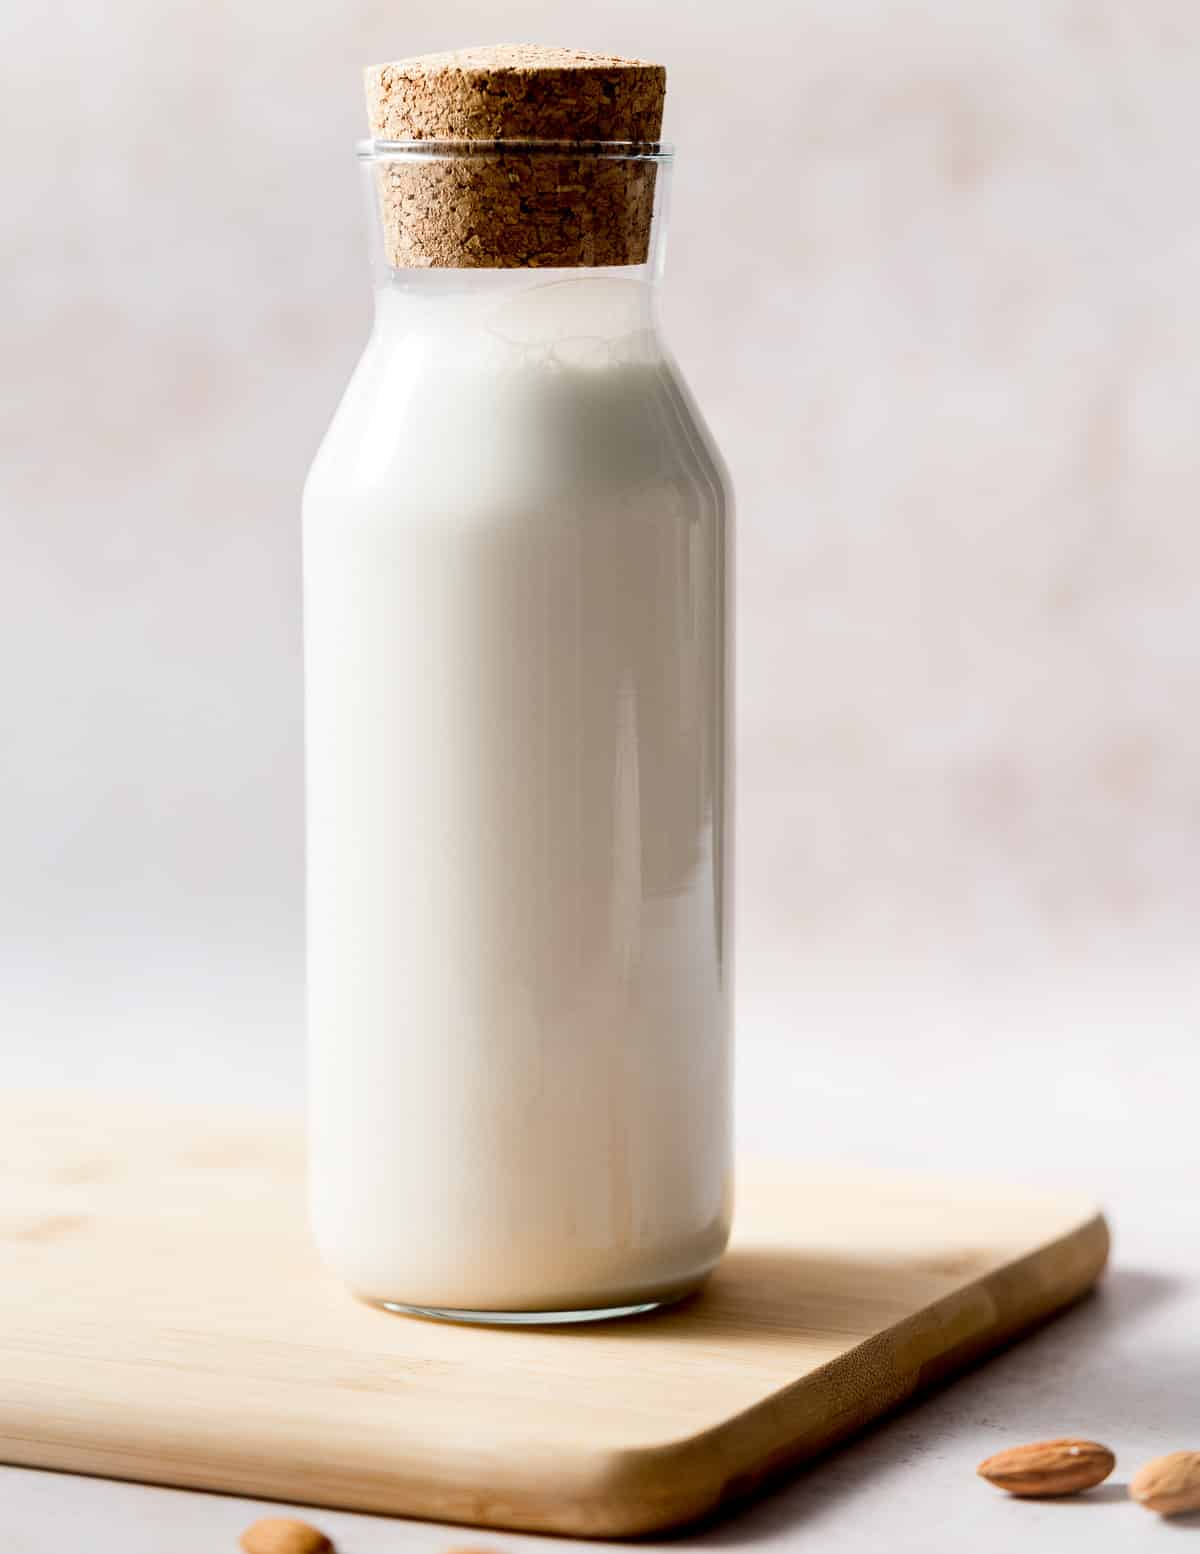 a bottle of almond milk